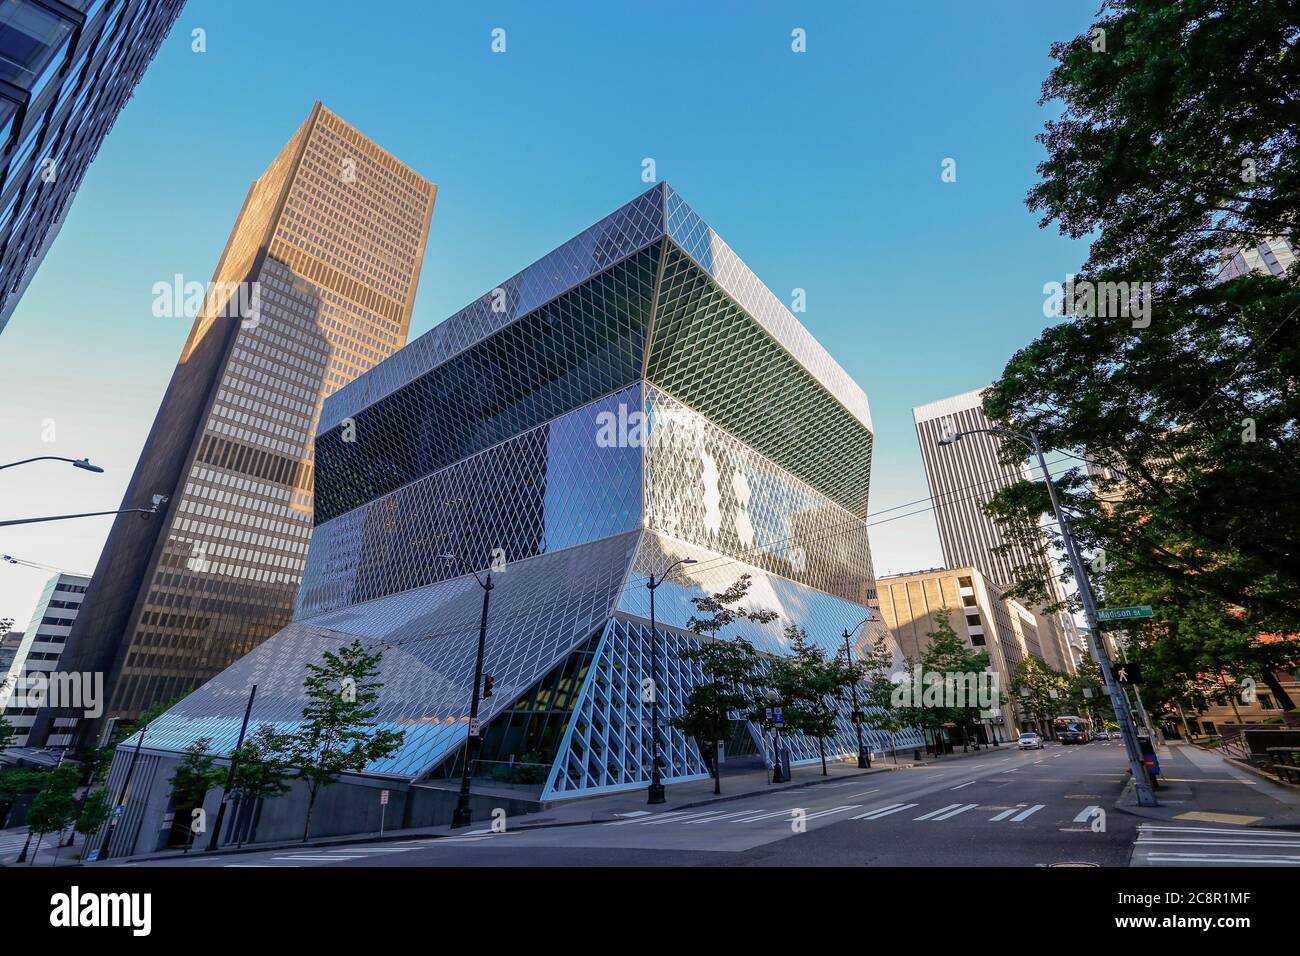 Seattle, Washington, USA - 21. Juli 2018 - Öffentliche Bibliothek in Seattle. Die Zentralbibliothek wurde von Rem Koolhaas und Joshua Prince-Ramus und wa entworfen Stockfoto